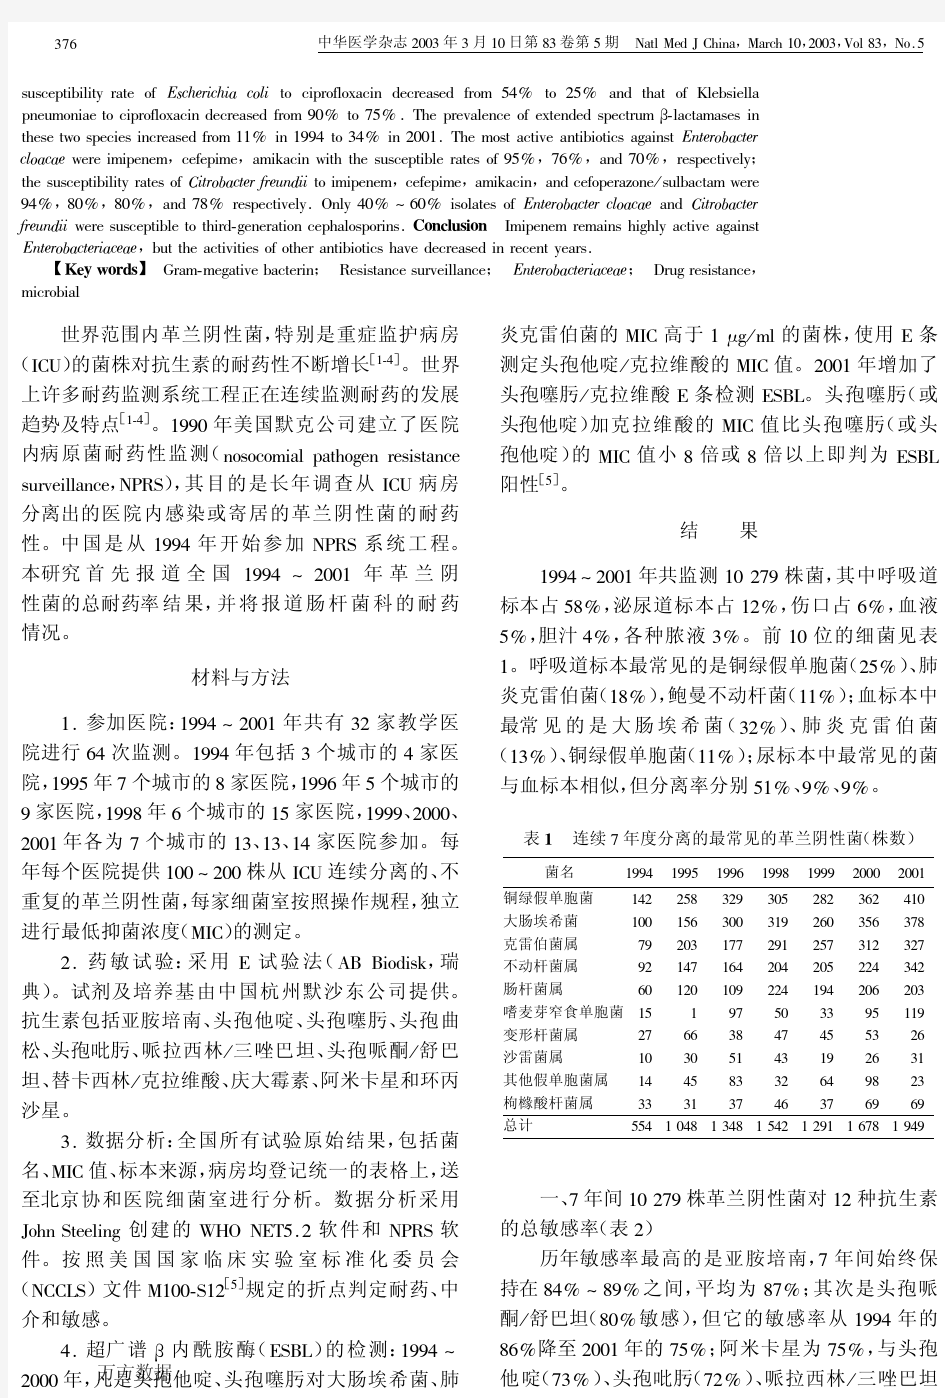 中国重症监护病房革兰阴性菌耐药性连续7年监测研究